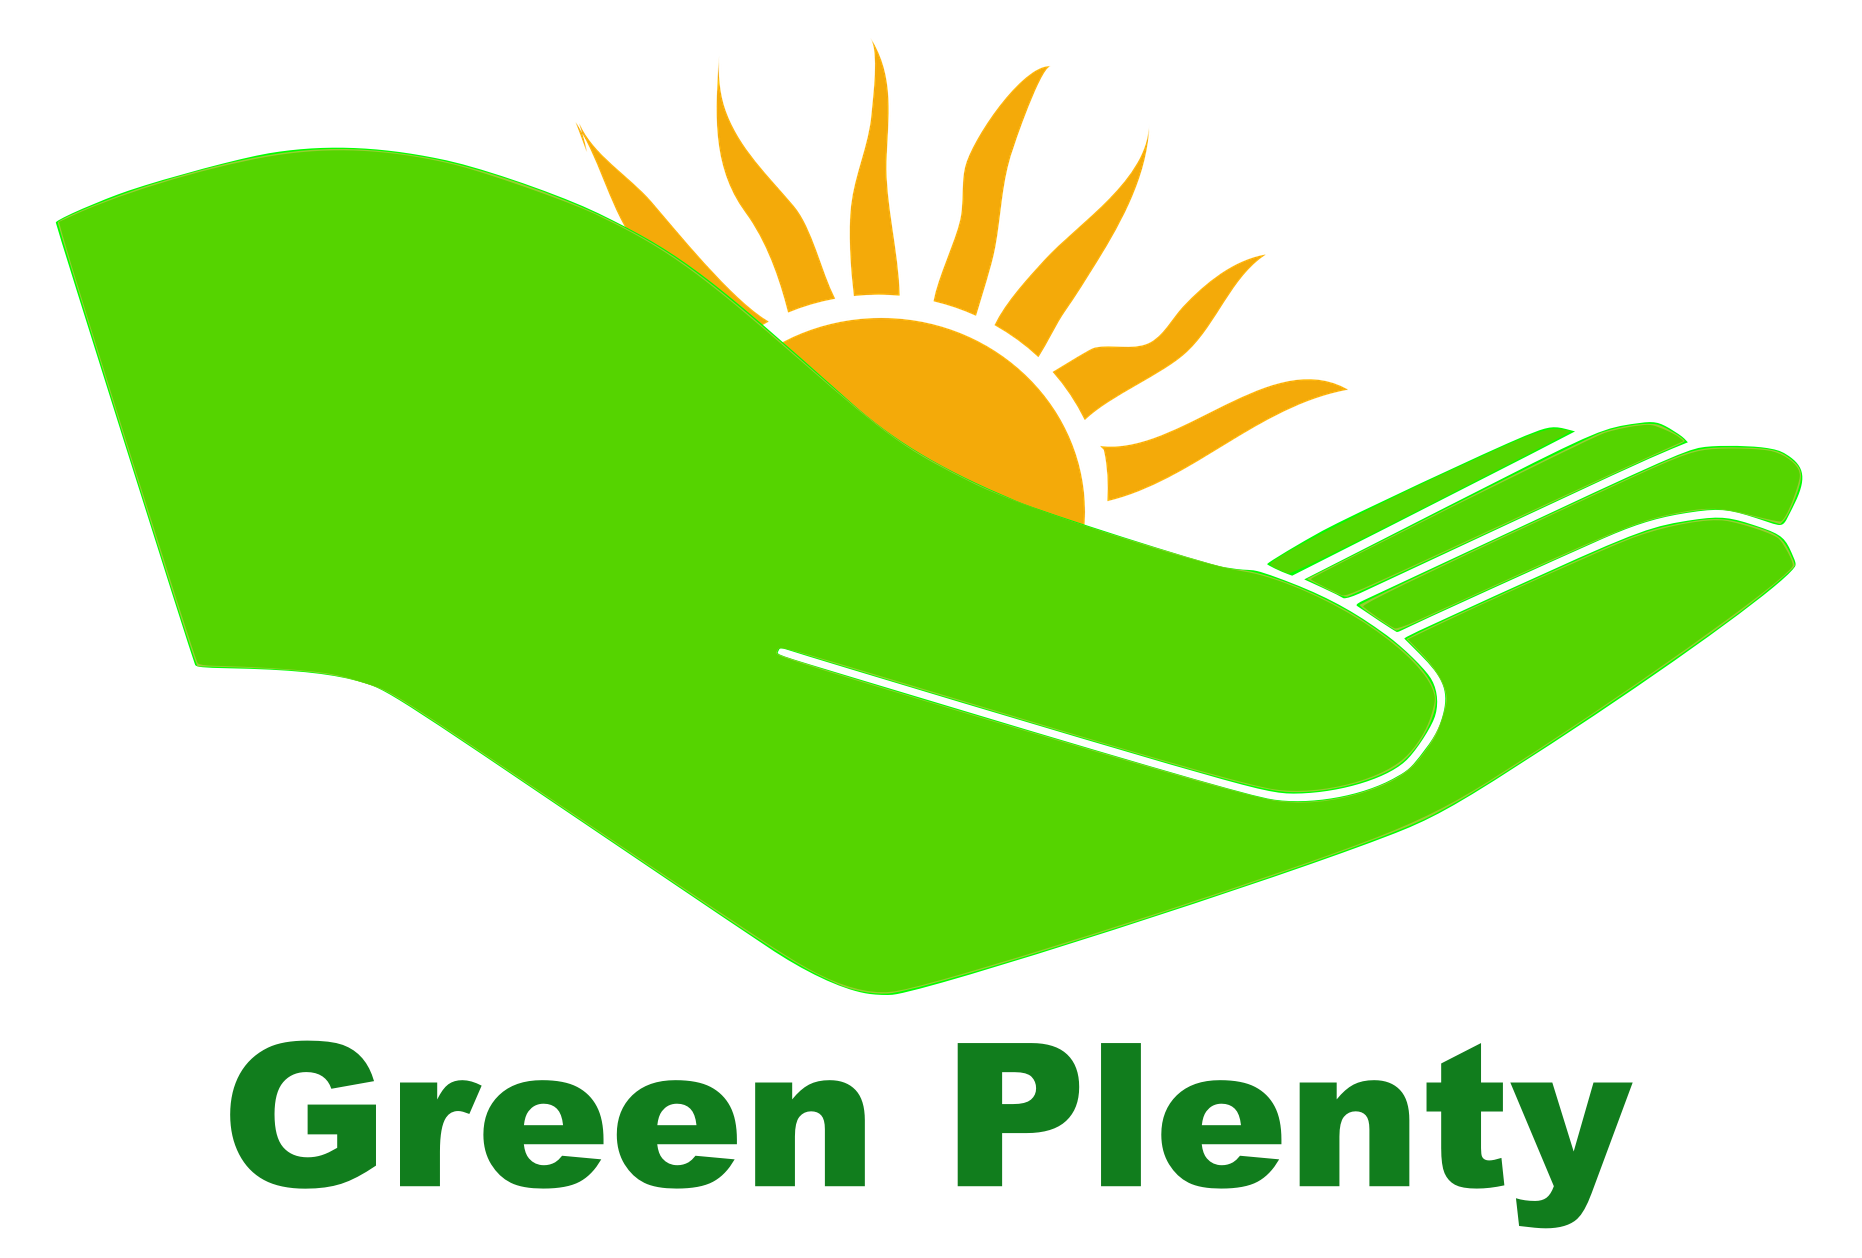 Green Plenty